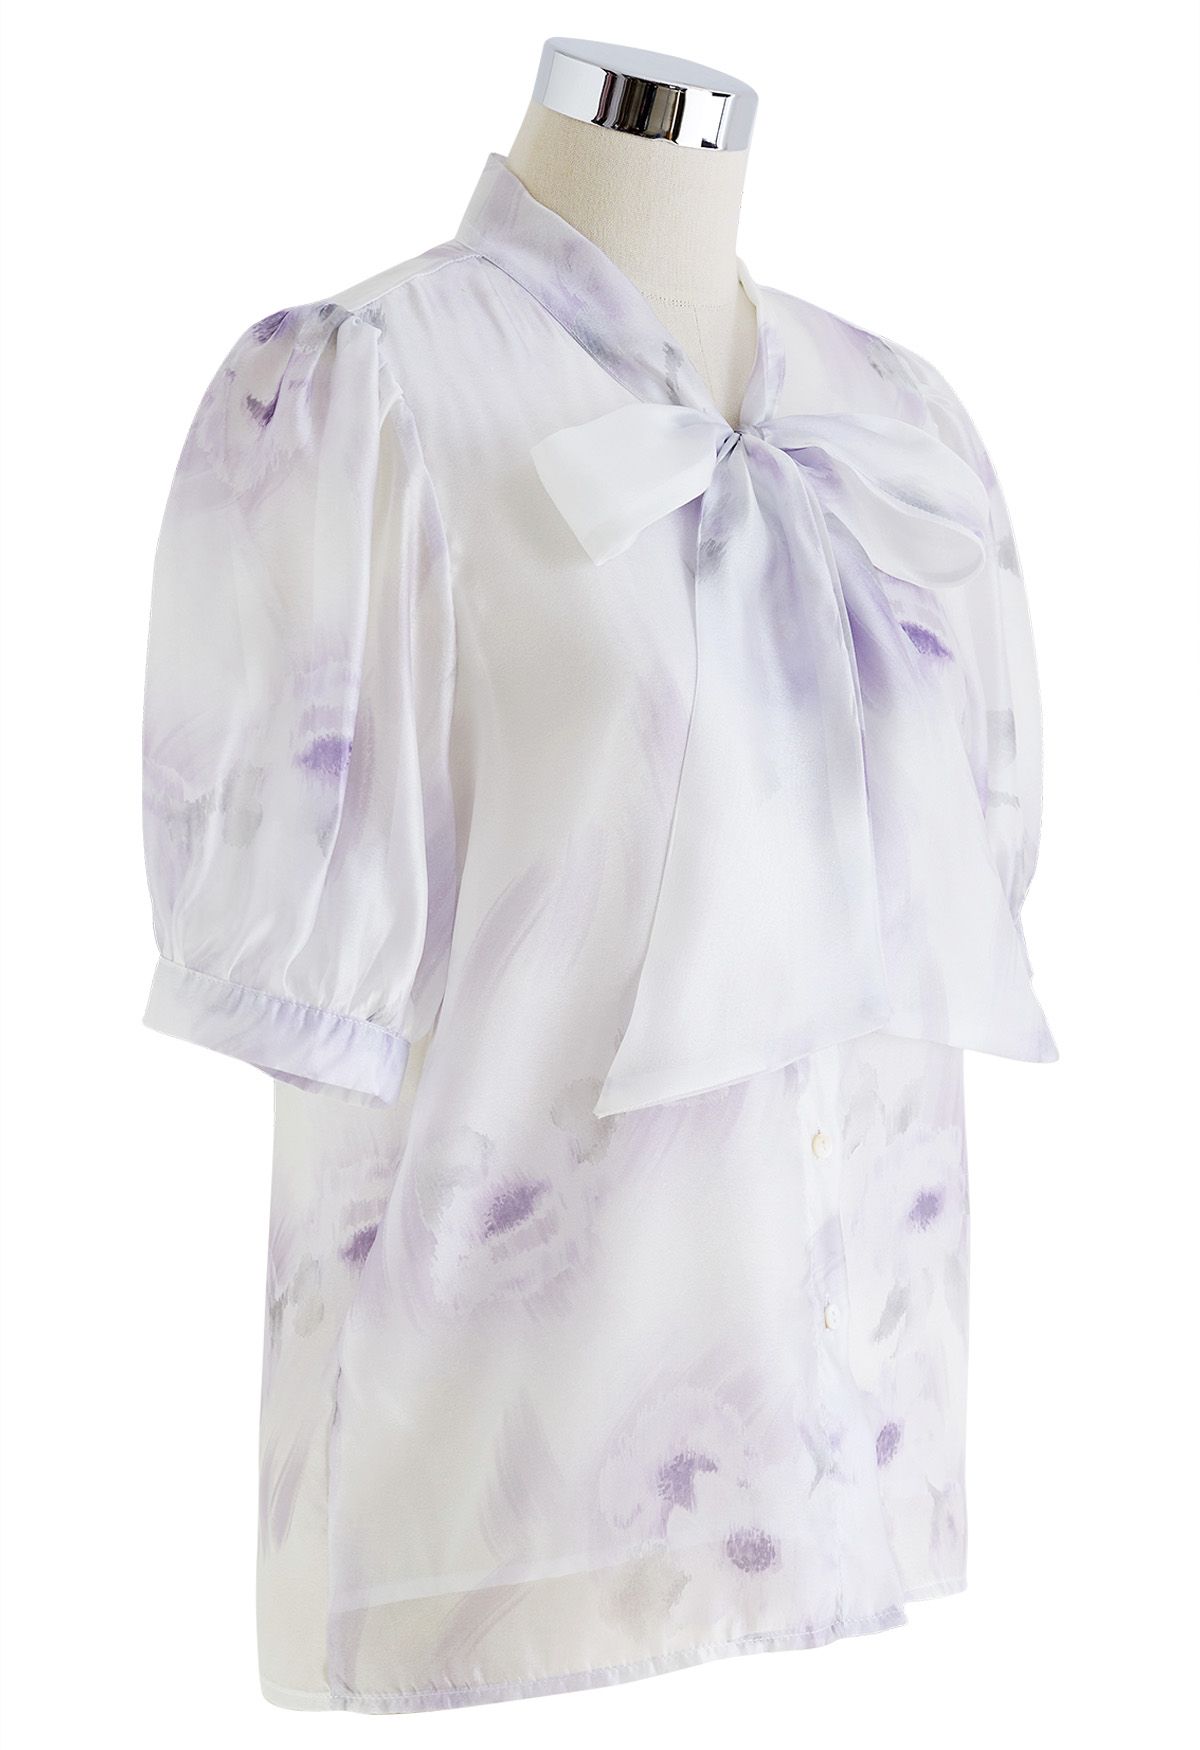 Camisa transparente con lazo floral de acuarela en lavanda